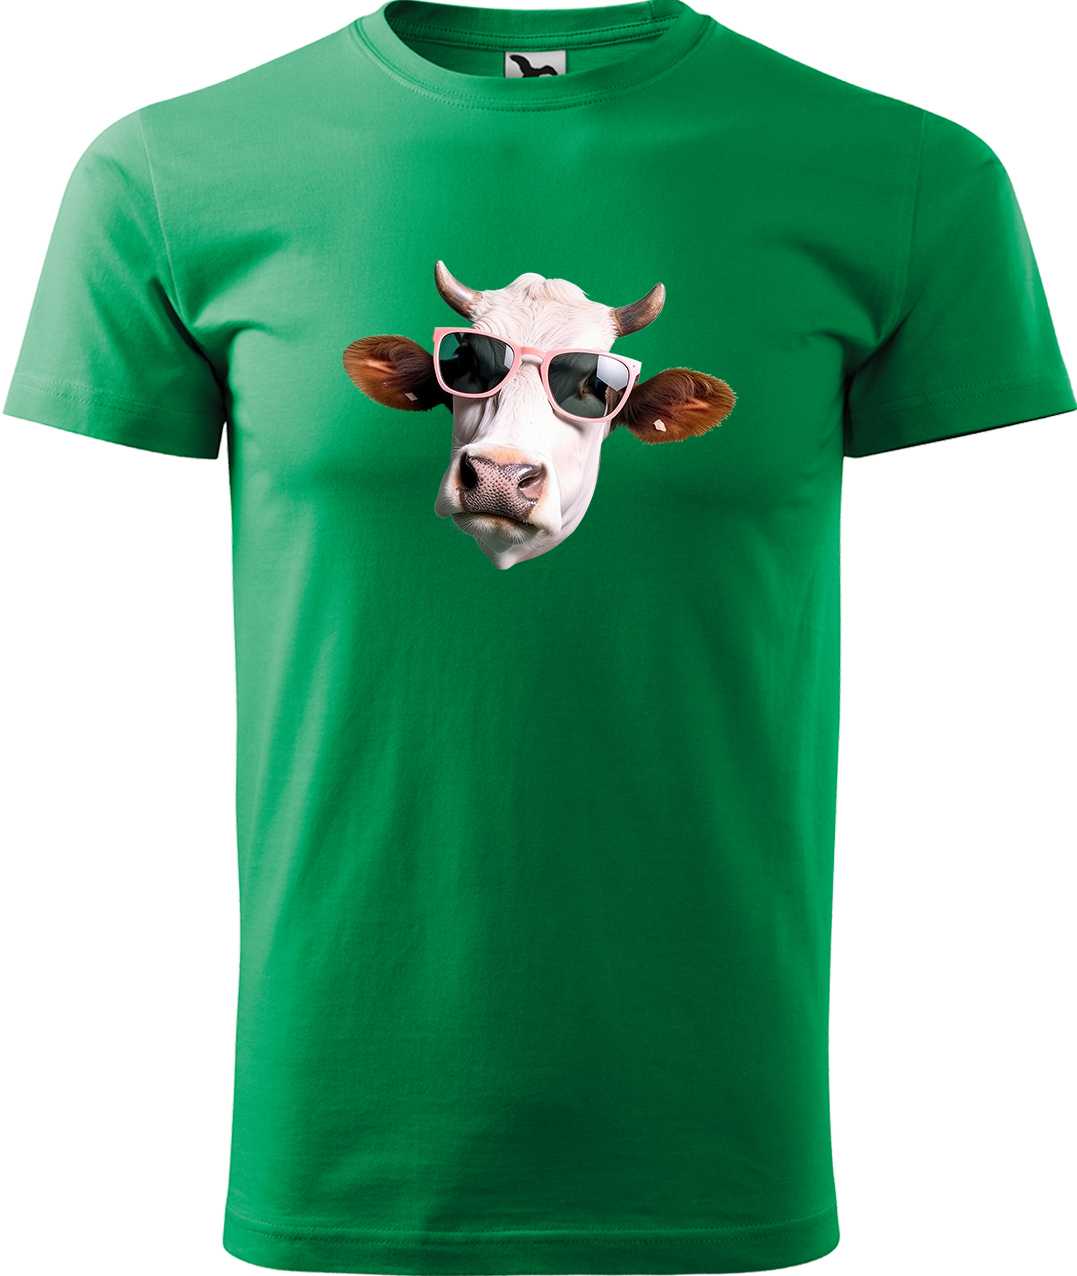 Pánské tričko s krávou - Kráva v brýlích Velikost: L, Barva: Středně zelená (16), Střih: pánský